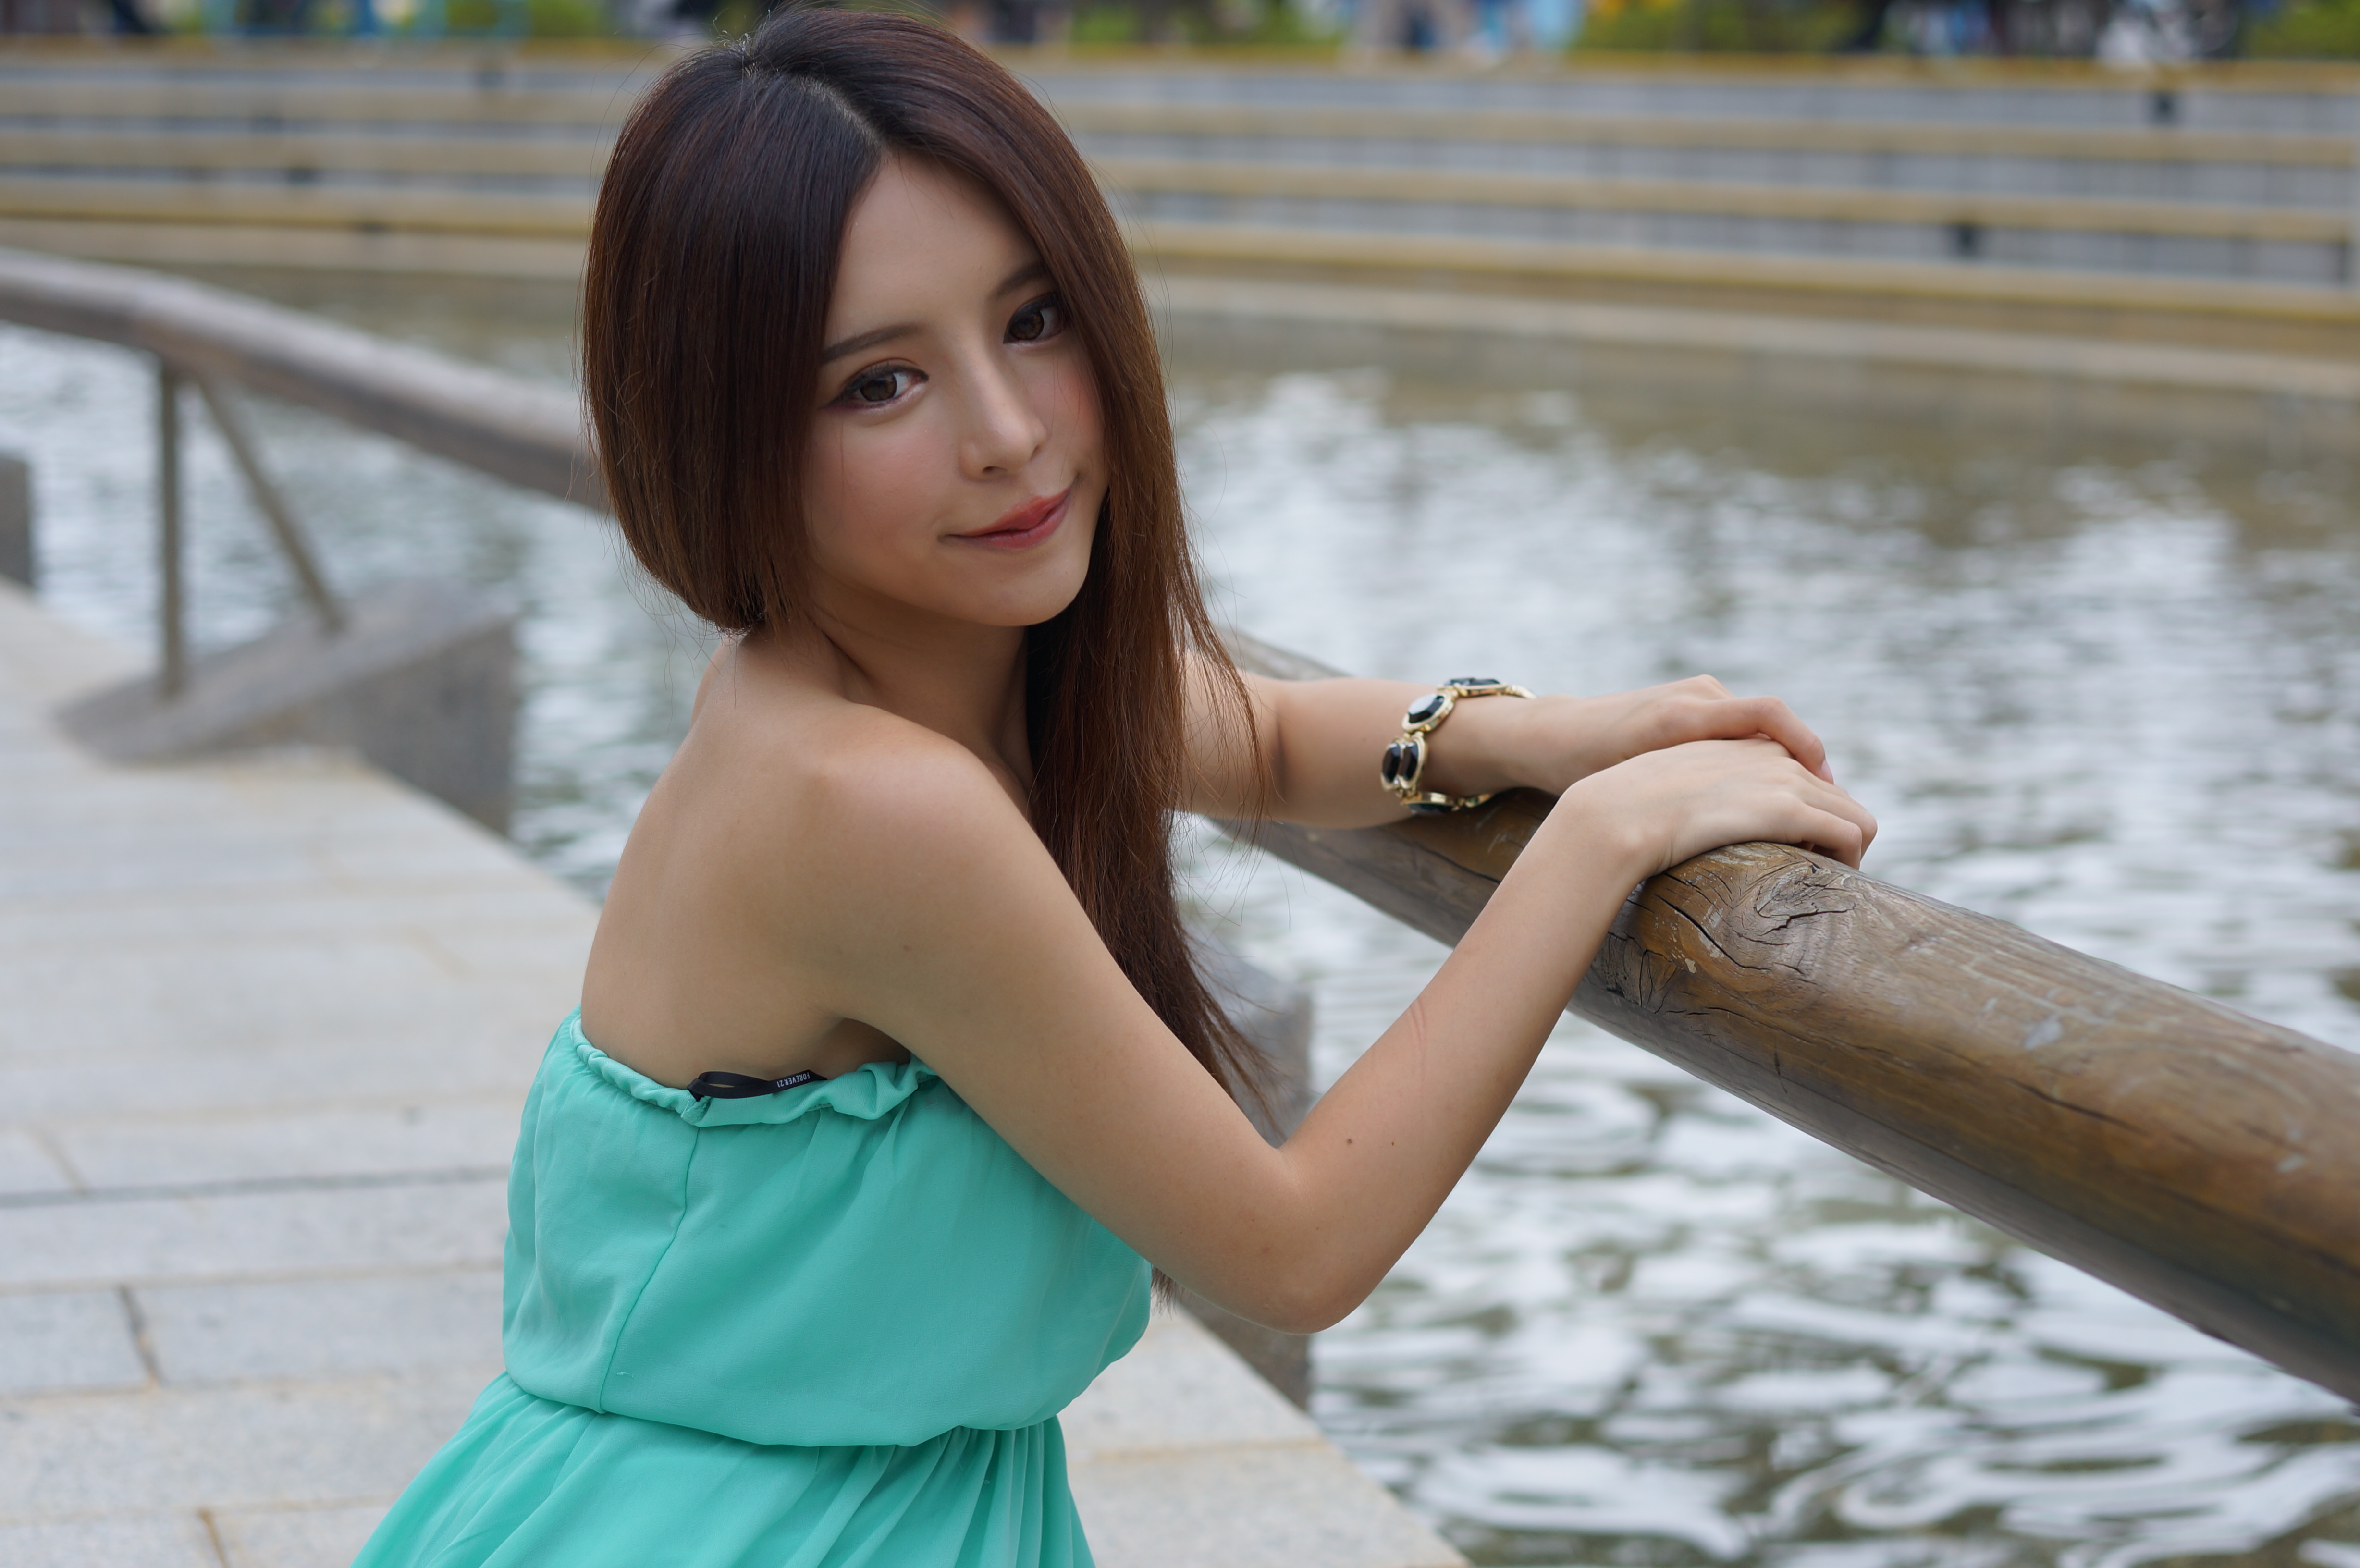 Asian Bracelet Dress Girl Hong Kong Julie Chang Model Portrait Smile Taiwanese Water Zhang Qi Jun 4912x3264